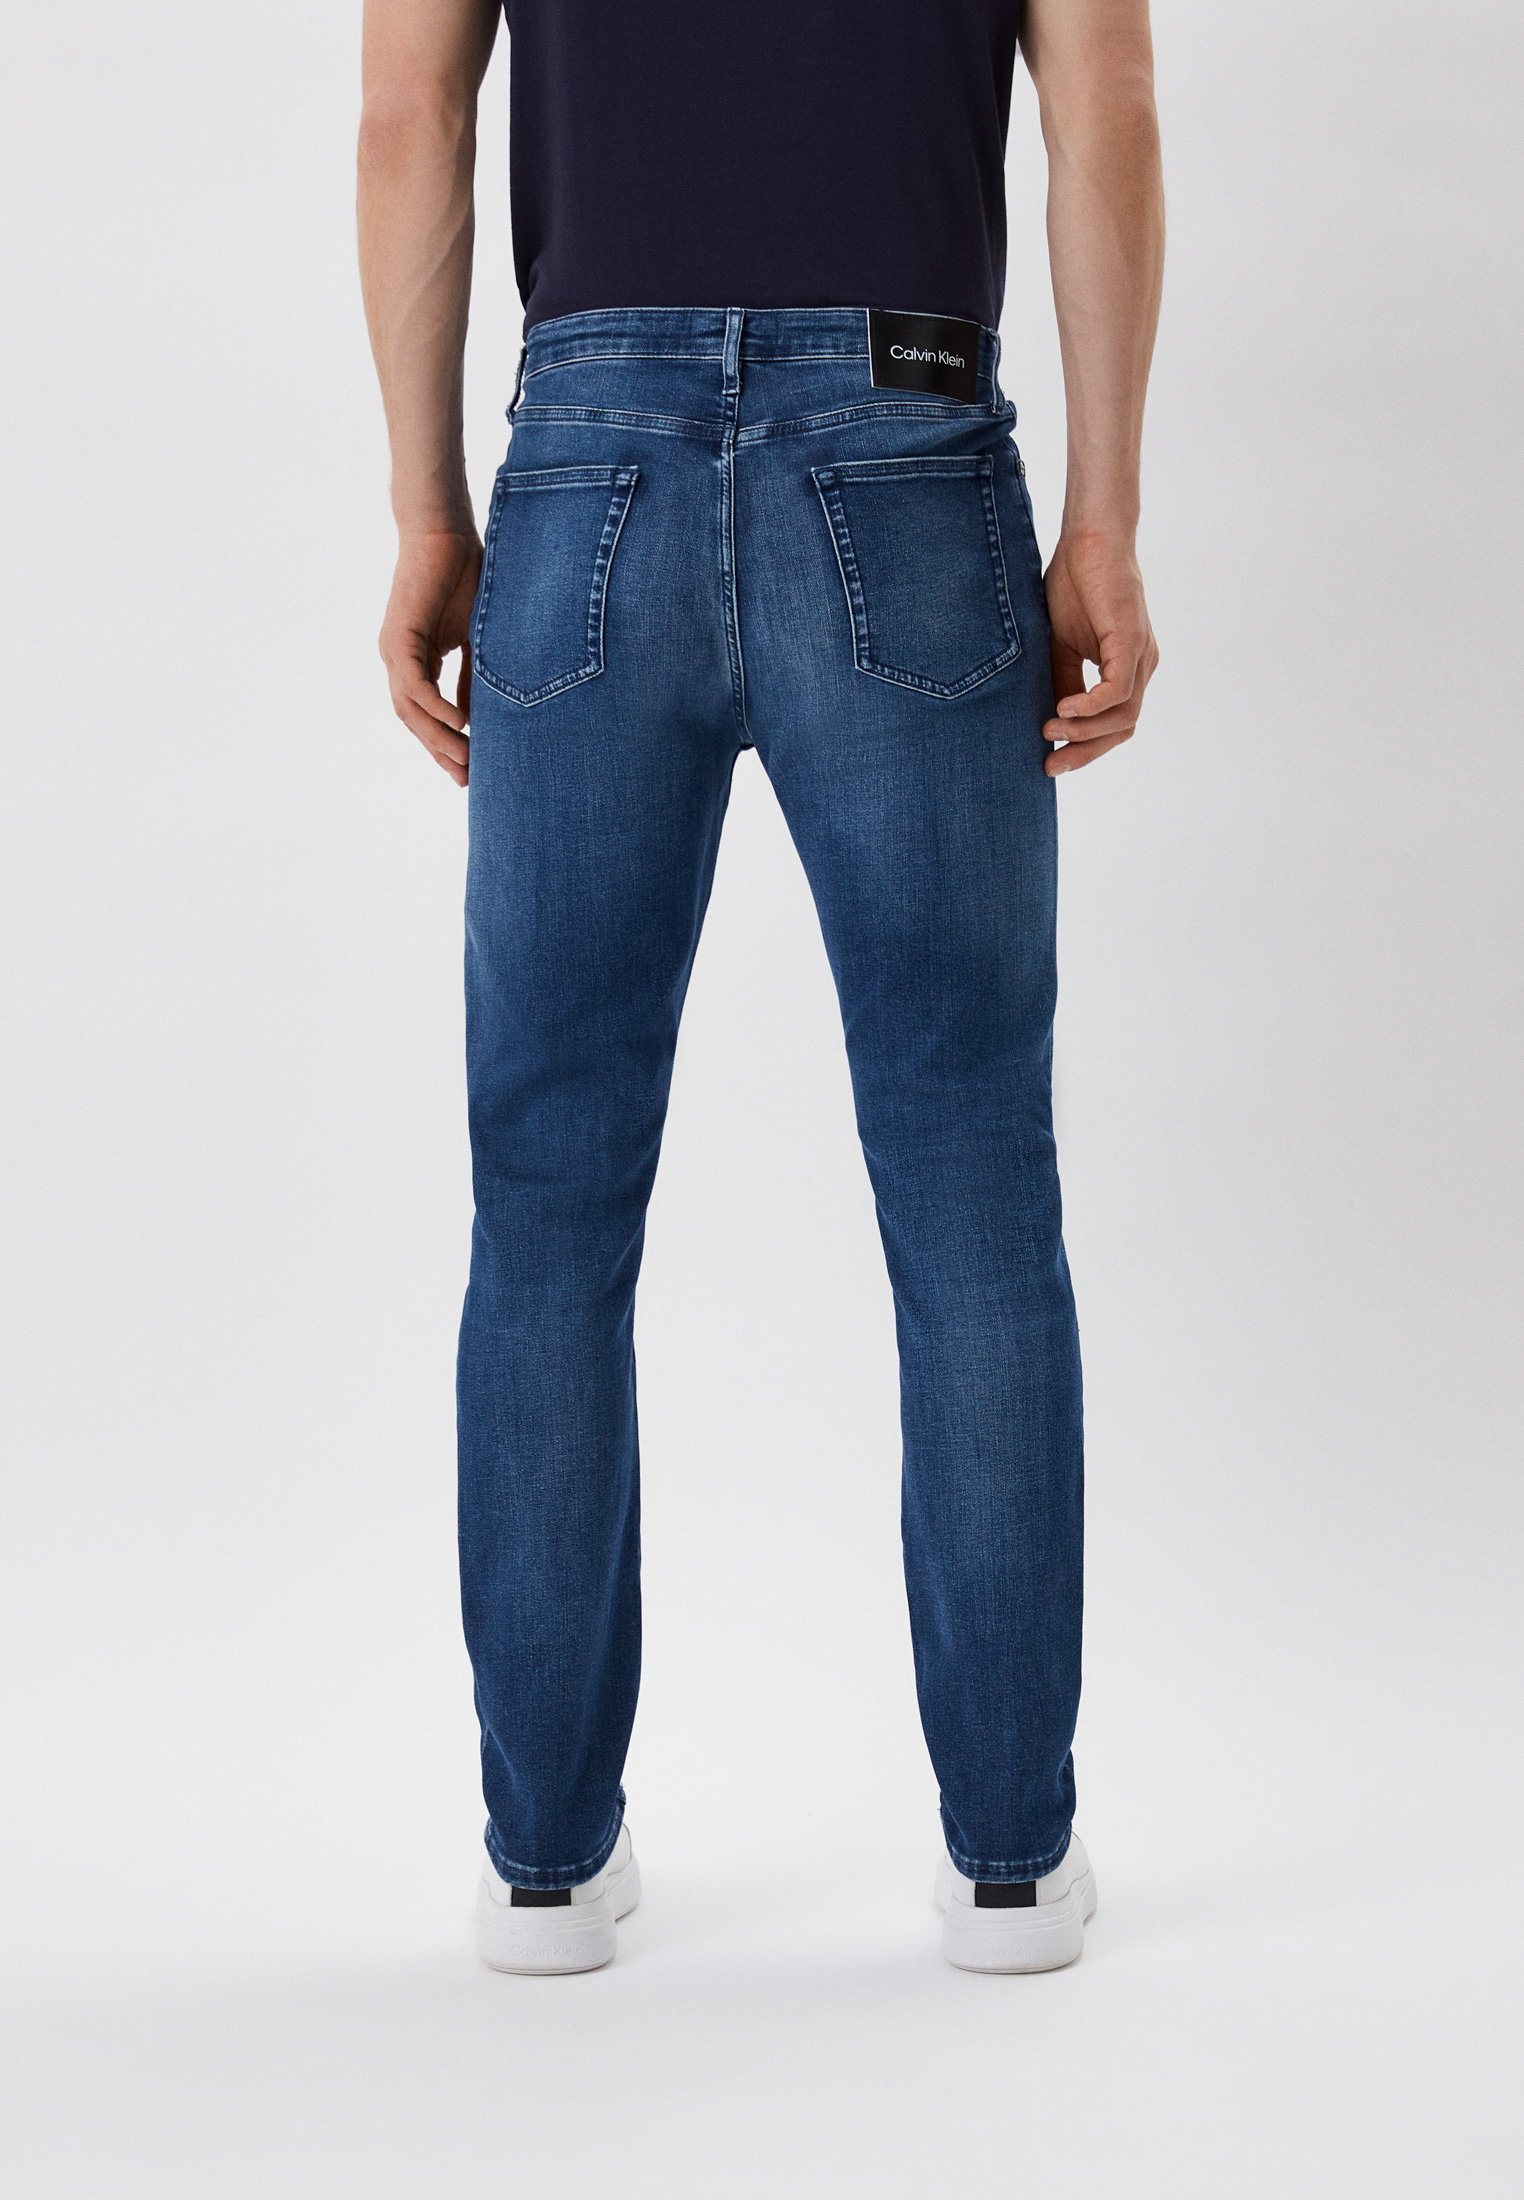 Мужские зауженные джинсы Calvin Klein (Кельвин Кляйн) K10K108132: изображение 3